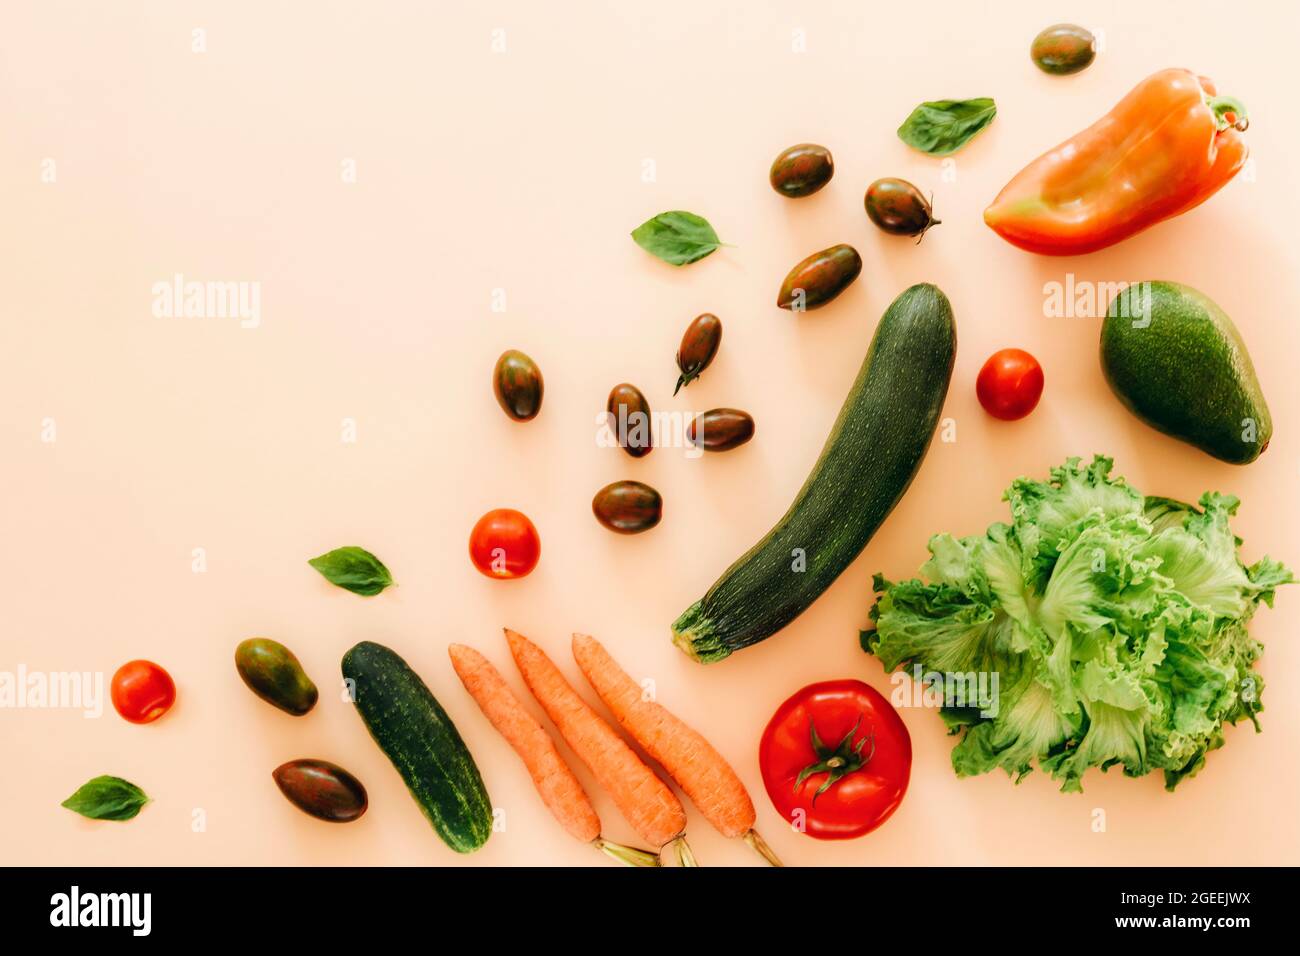 Zucchine, avocado, pomodoro, carota, cetriolo, peperone e lattuga su sfondo beige. Cibo vegano crudo sano, dieta, concetto di disintossicazione. Vista dall'alto, piatta Foto Stock